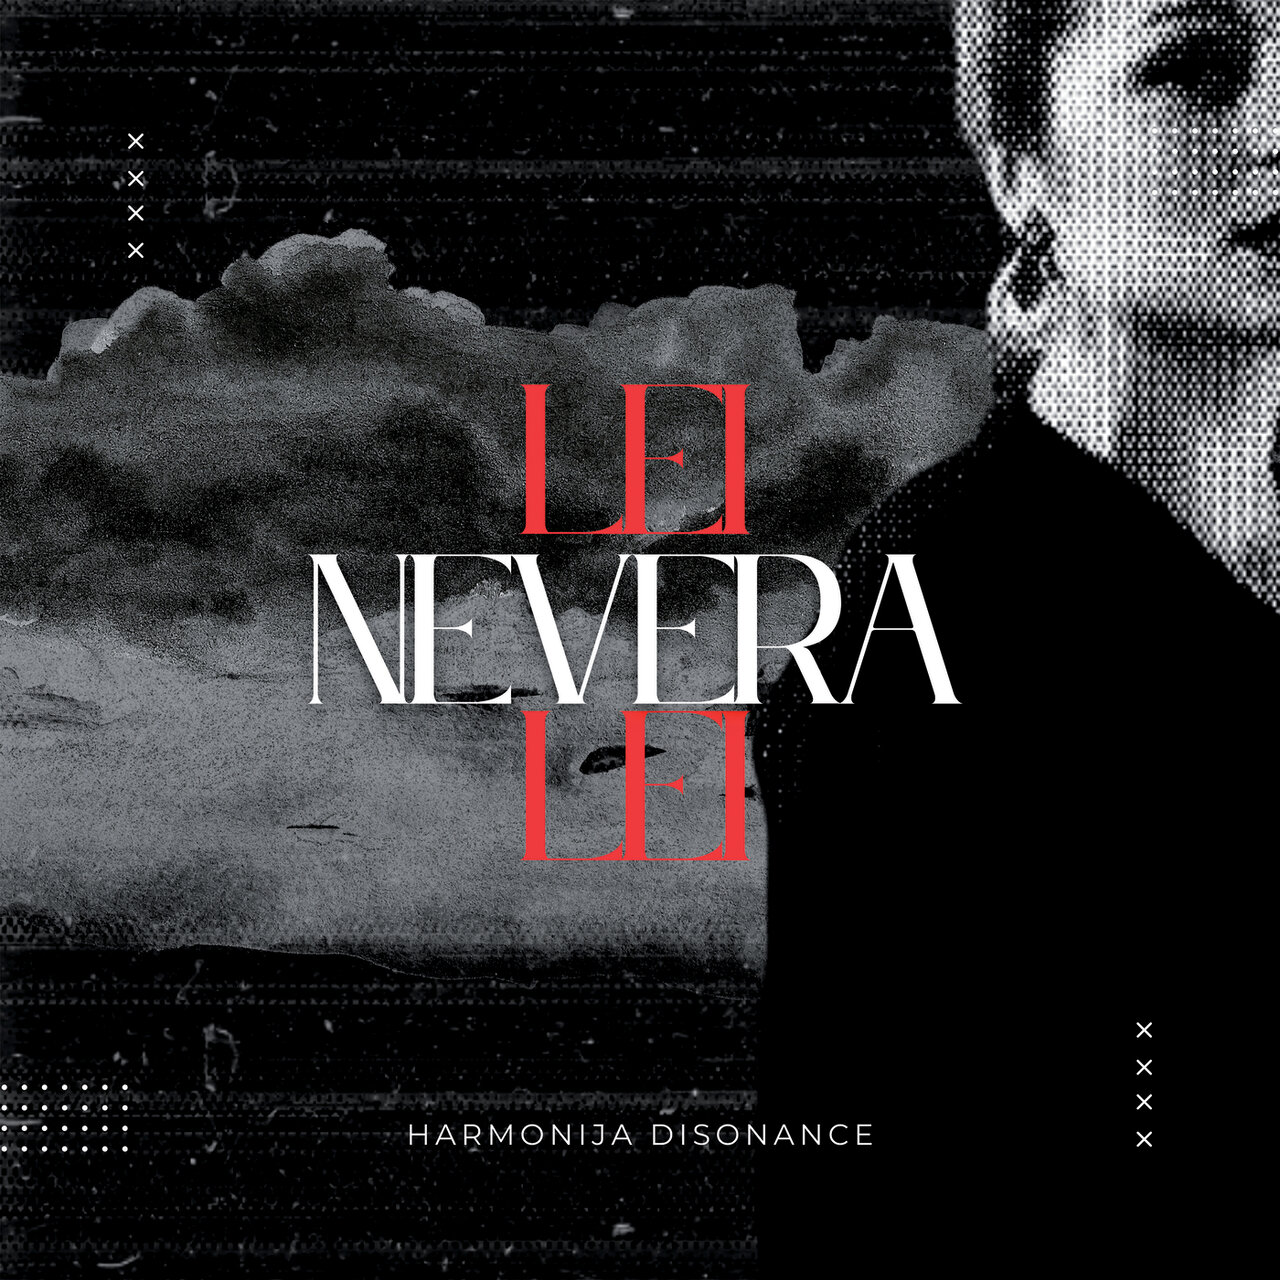 Harmonija disonance Nevera (Lei, lei) cover artwork